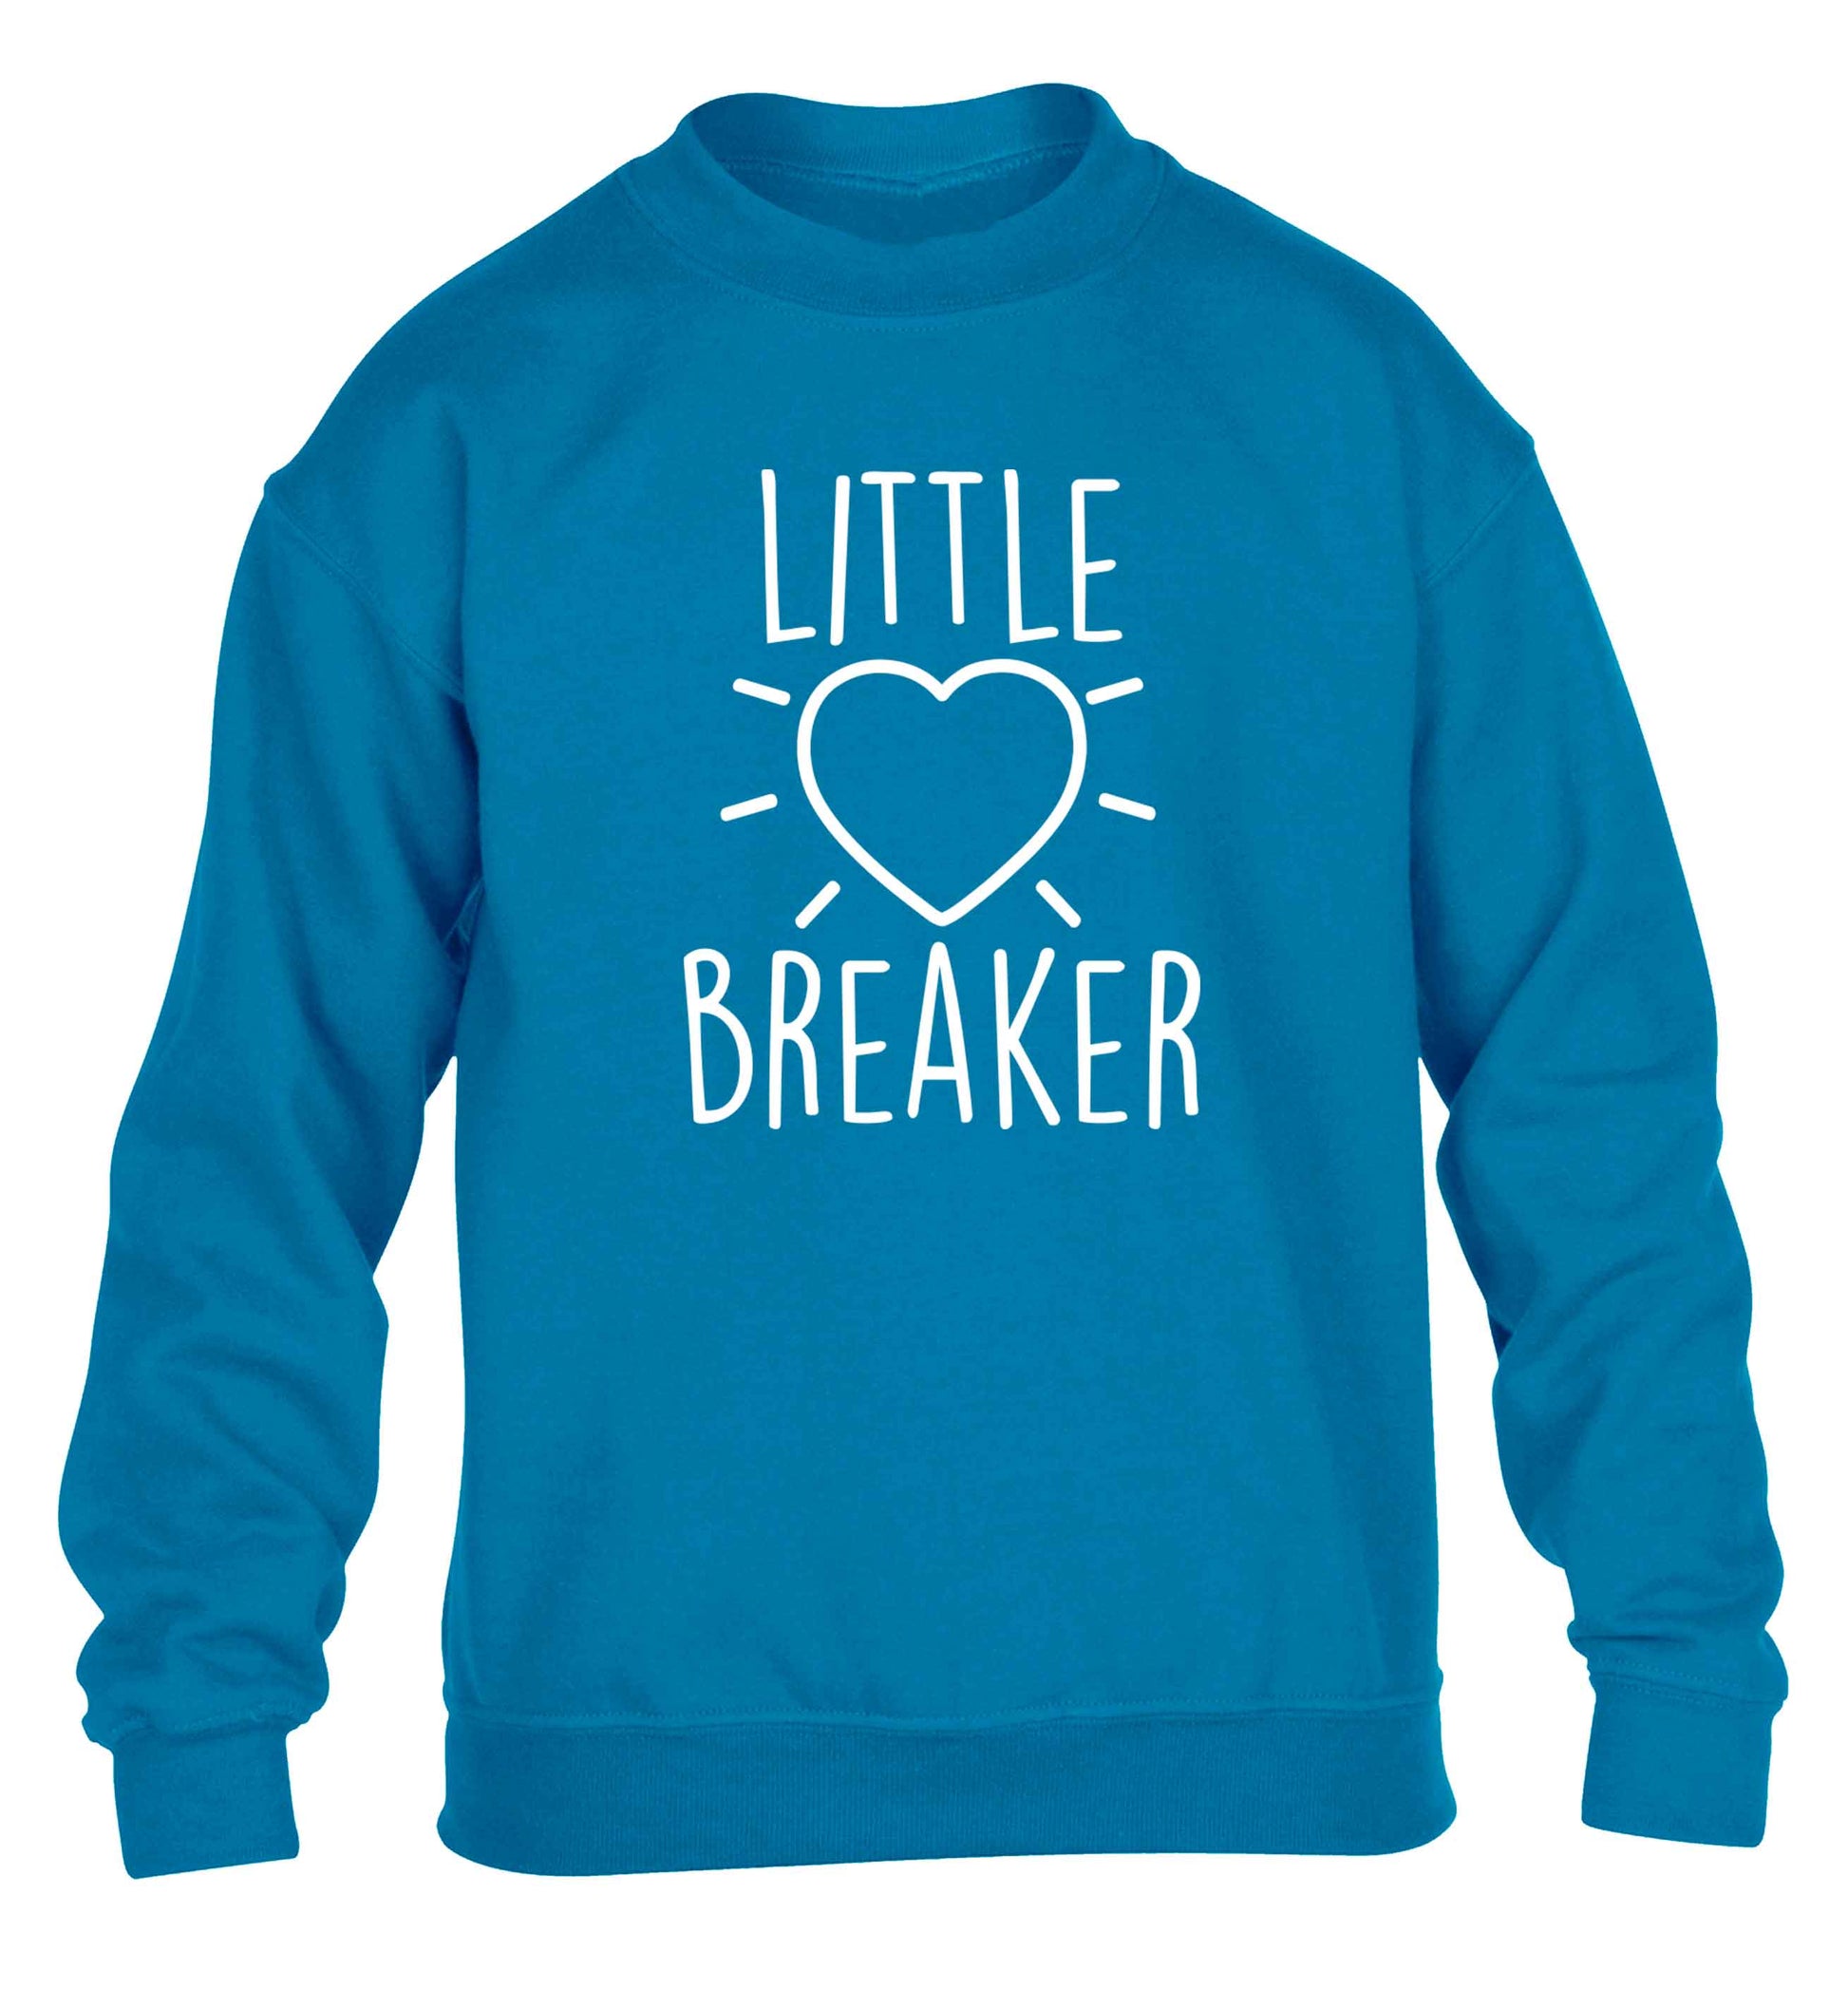 Little heartbreaker children's blue sweater 12-13 Years